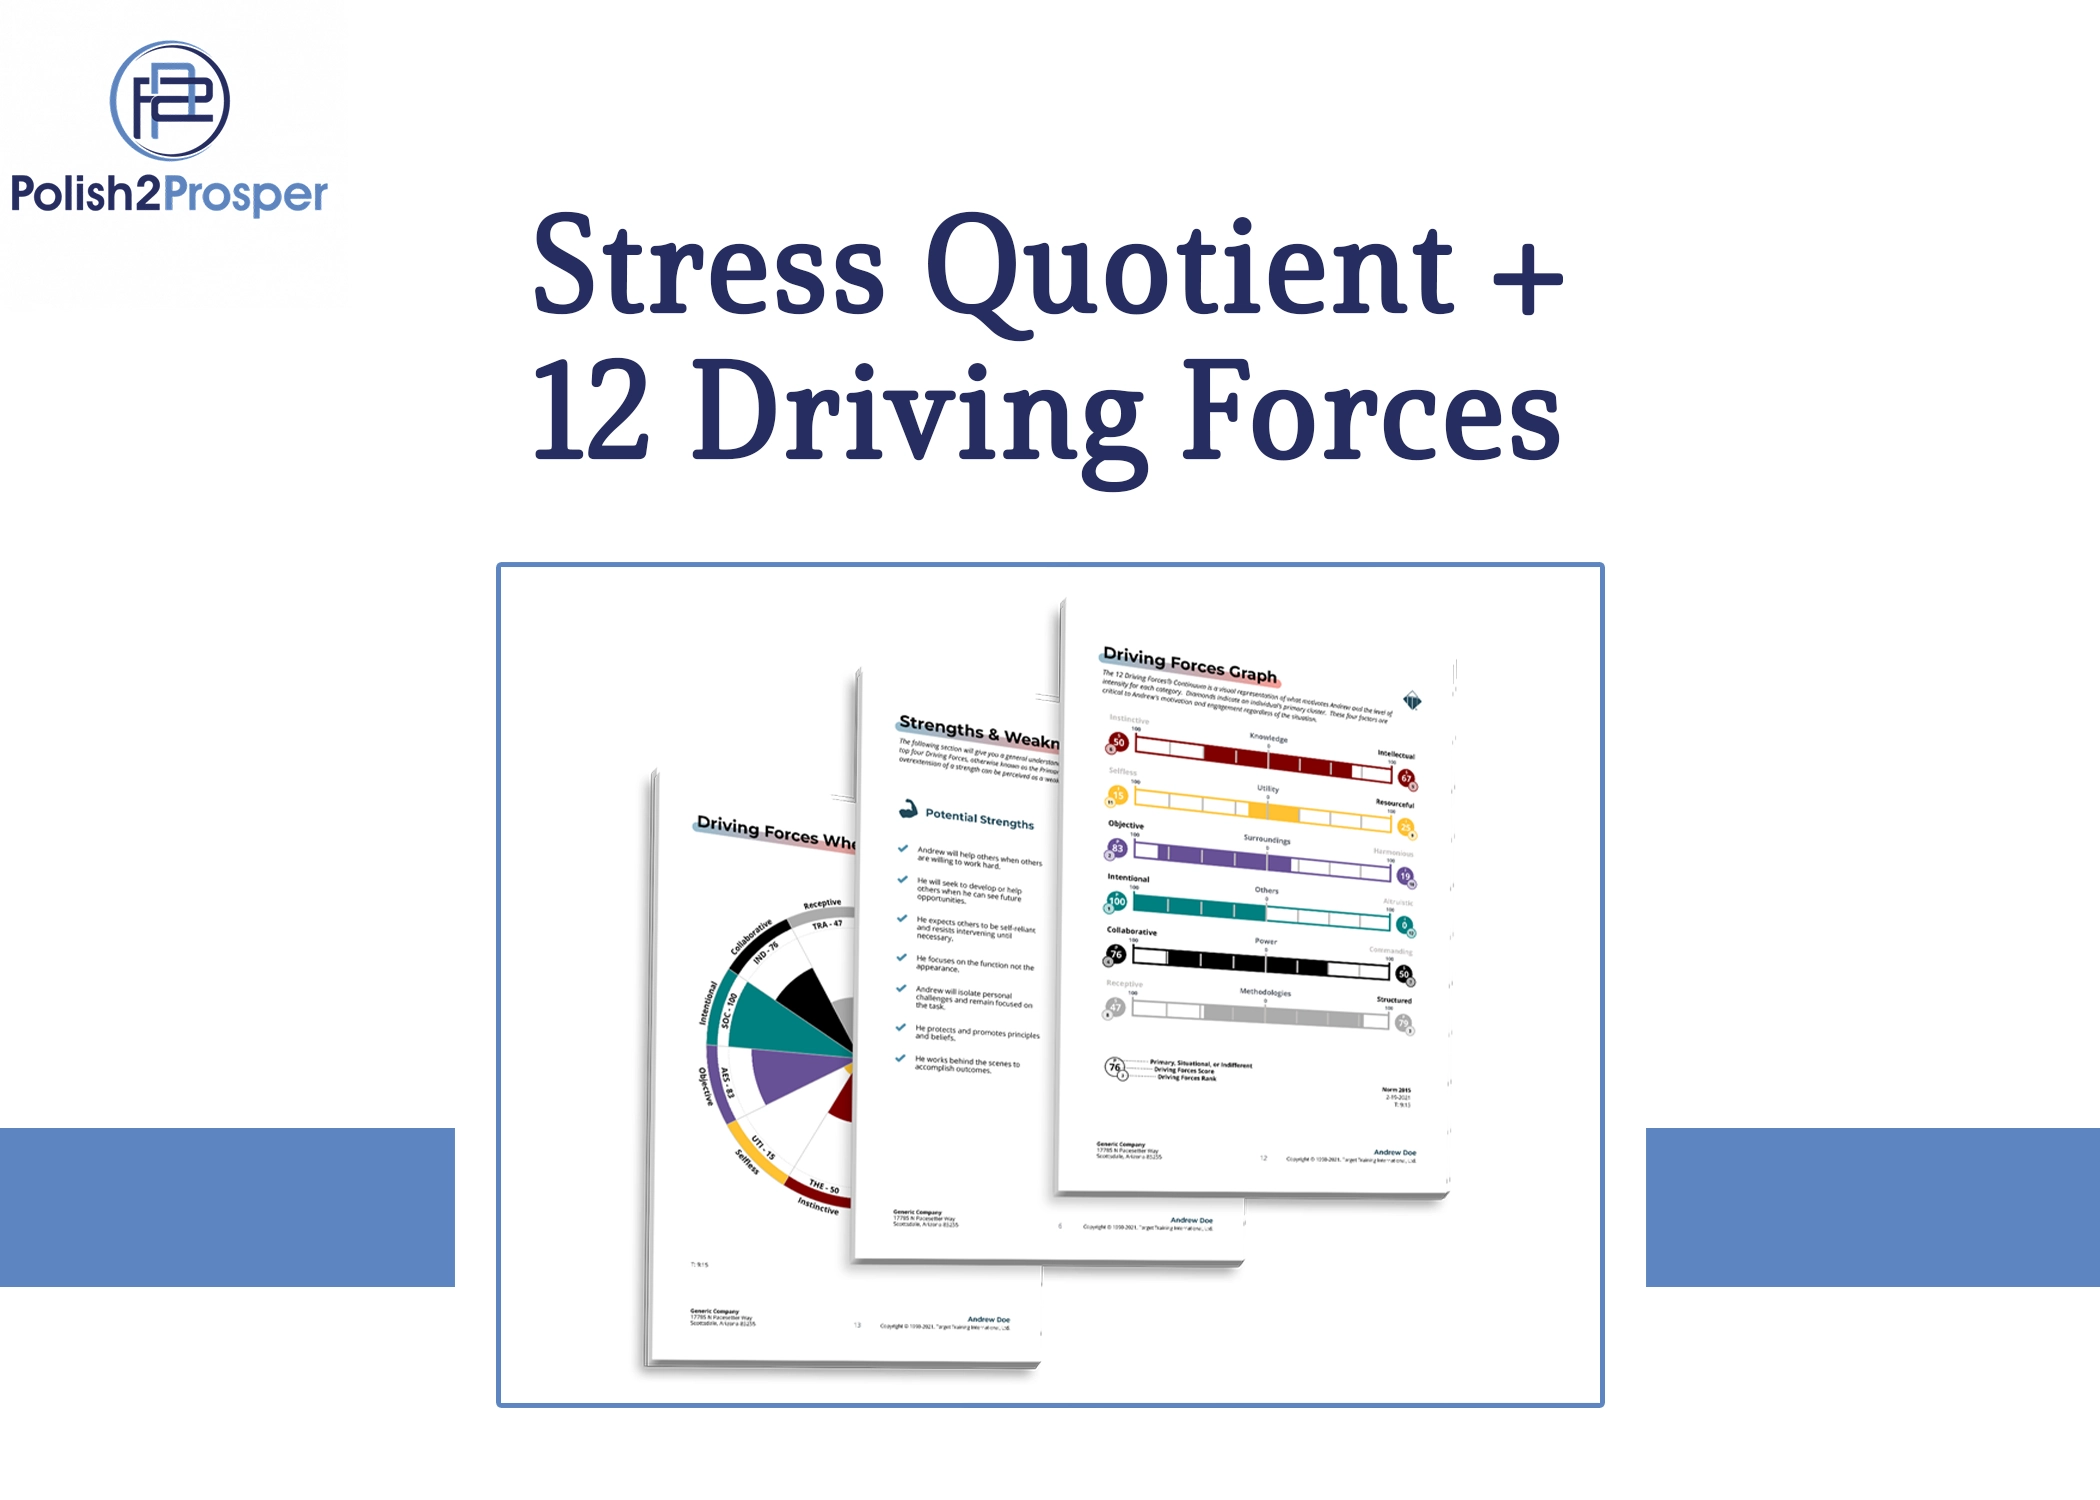 P2P ProductImage Template Stress Quotient 12 Driving Forces 1